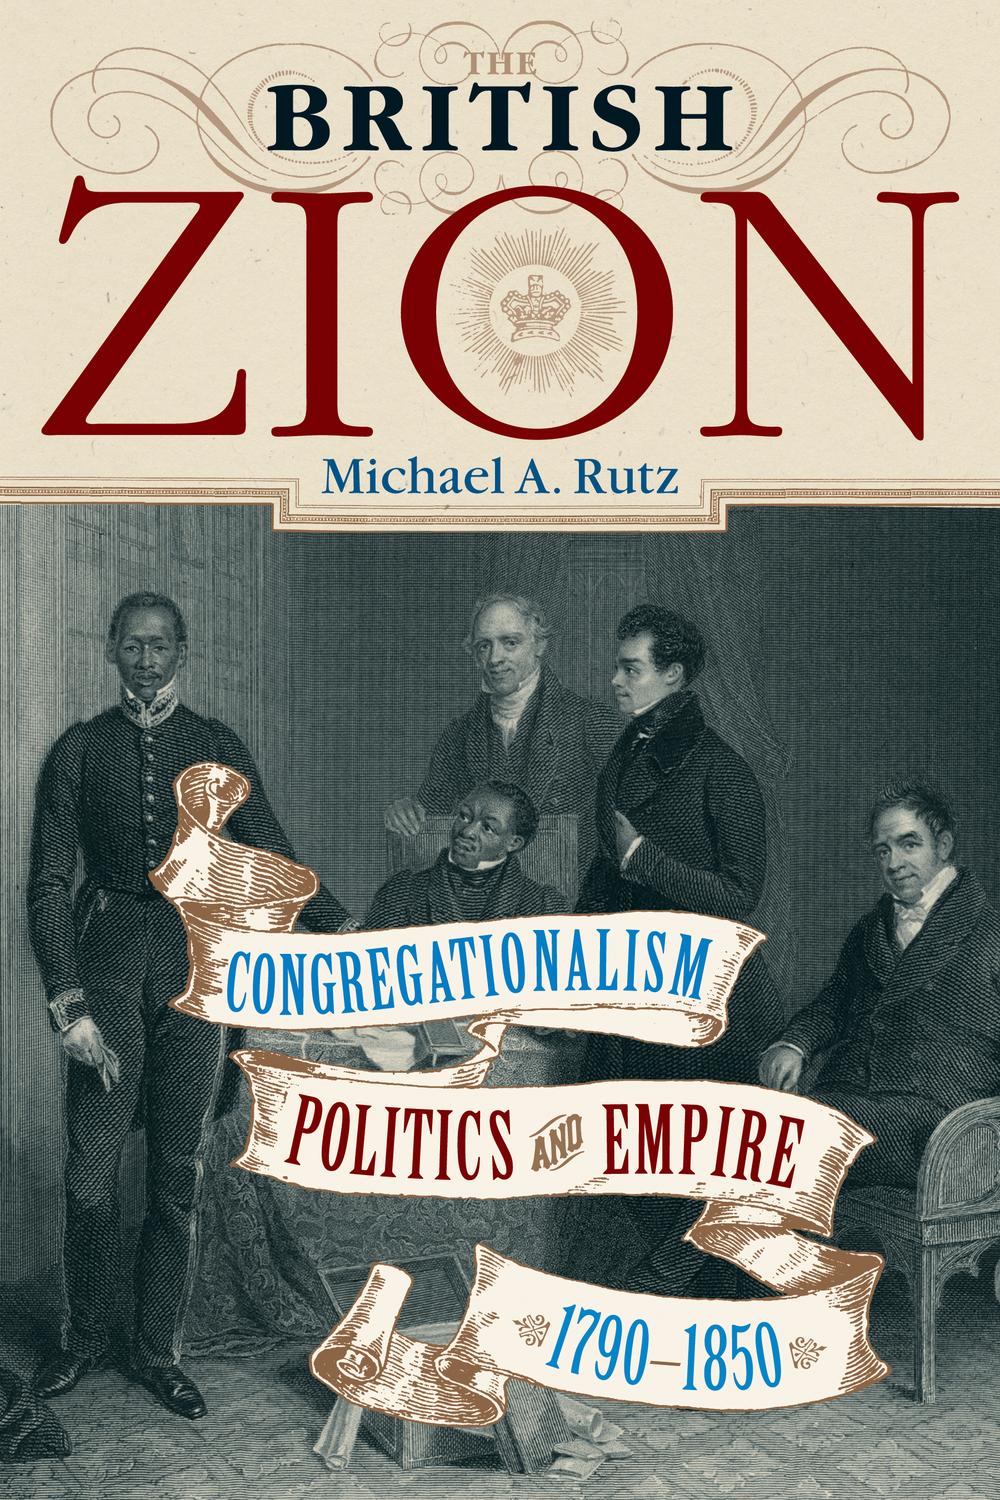 The British Zion - Michael A. Rutz